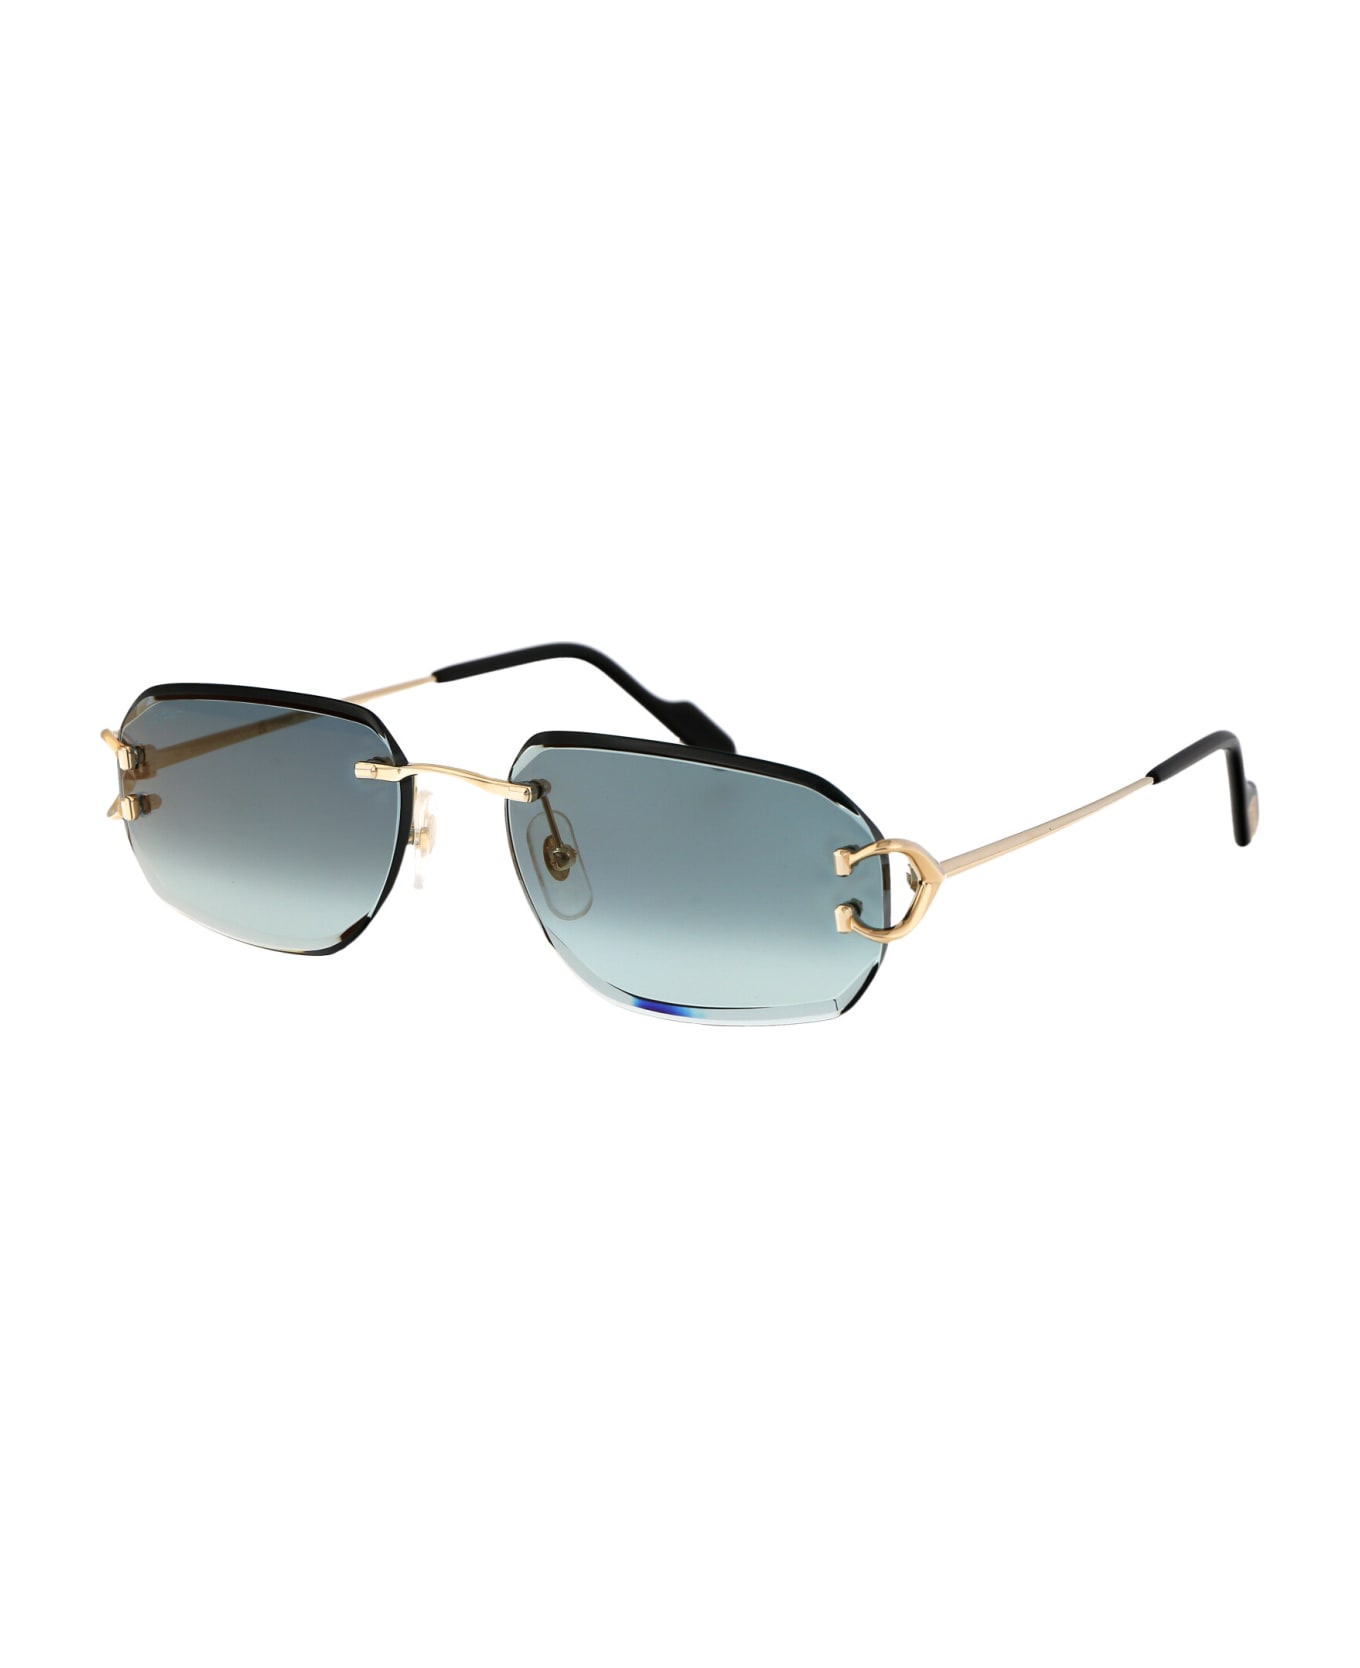 Cartier Eyewear Ct0468s Sunglasses - 003 GOLD GOLD GREEN